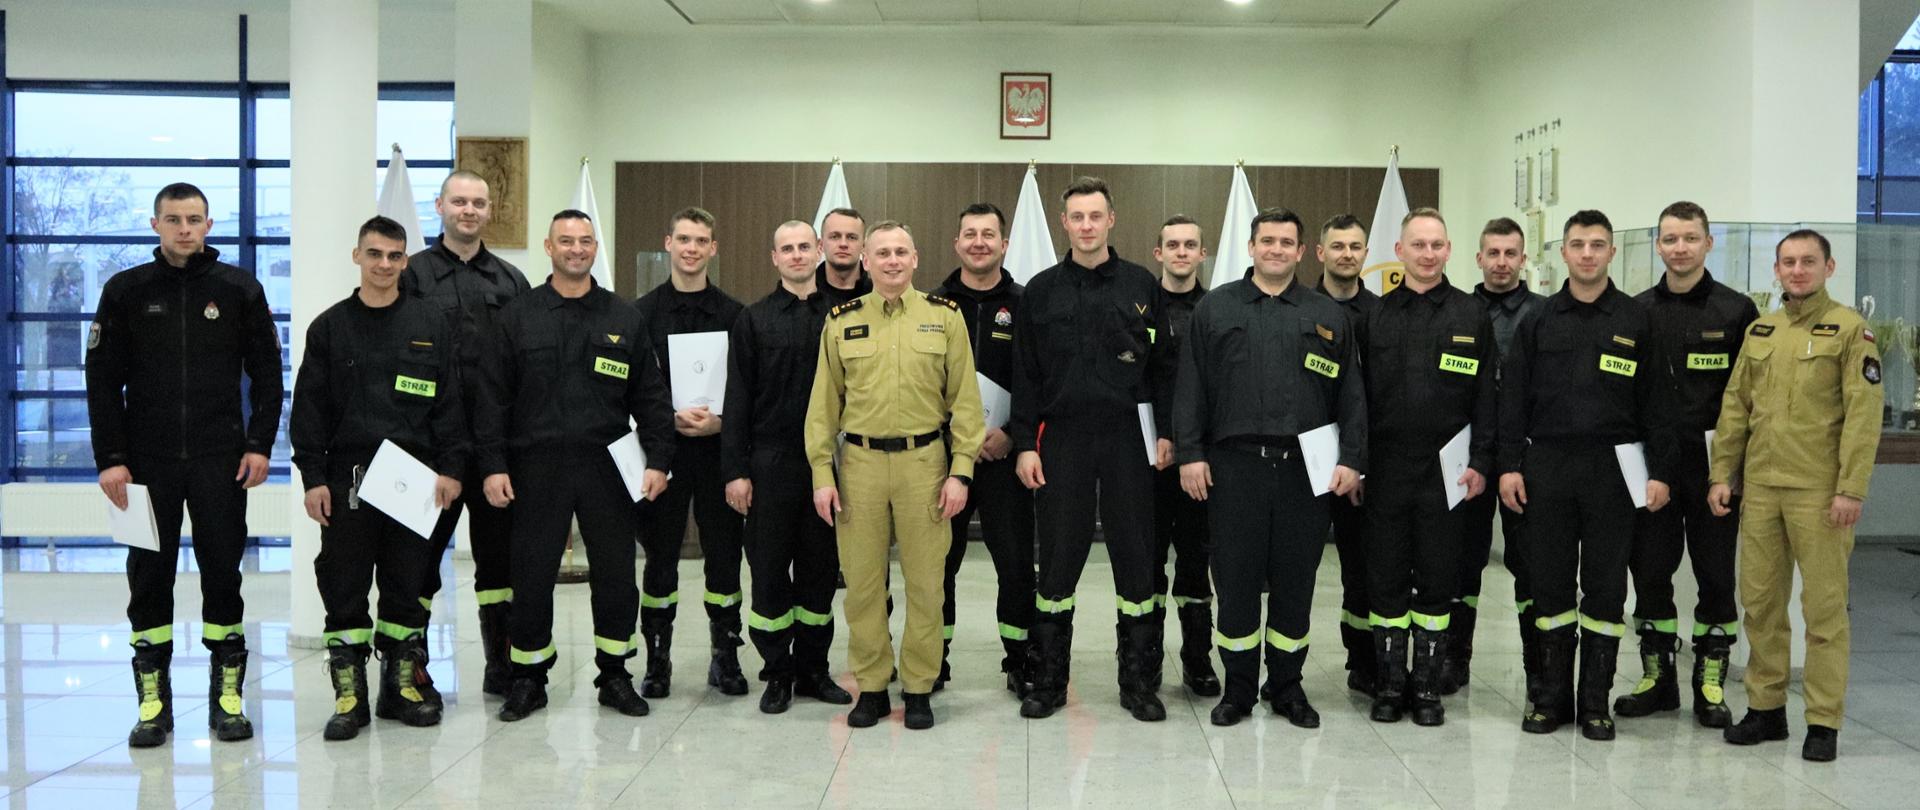 Grupowe zdjęcie uczestników szkolenia (16 strażaków) w towarzystwie Zastępcy Komendanta Centralnej Szkoły PSP oraz oficera Centralnej Szkoły PSP